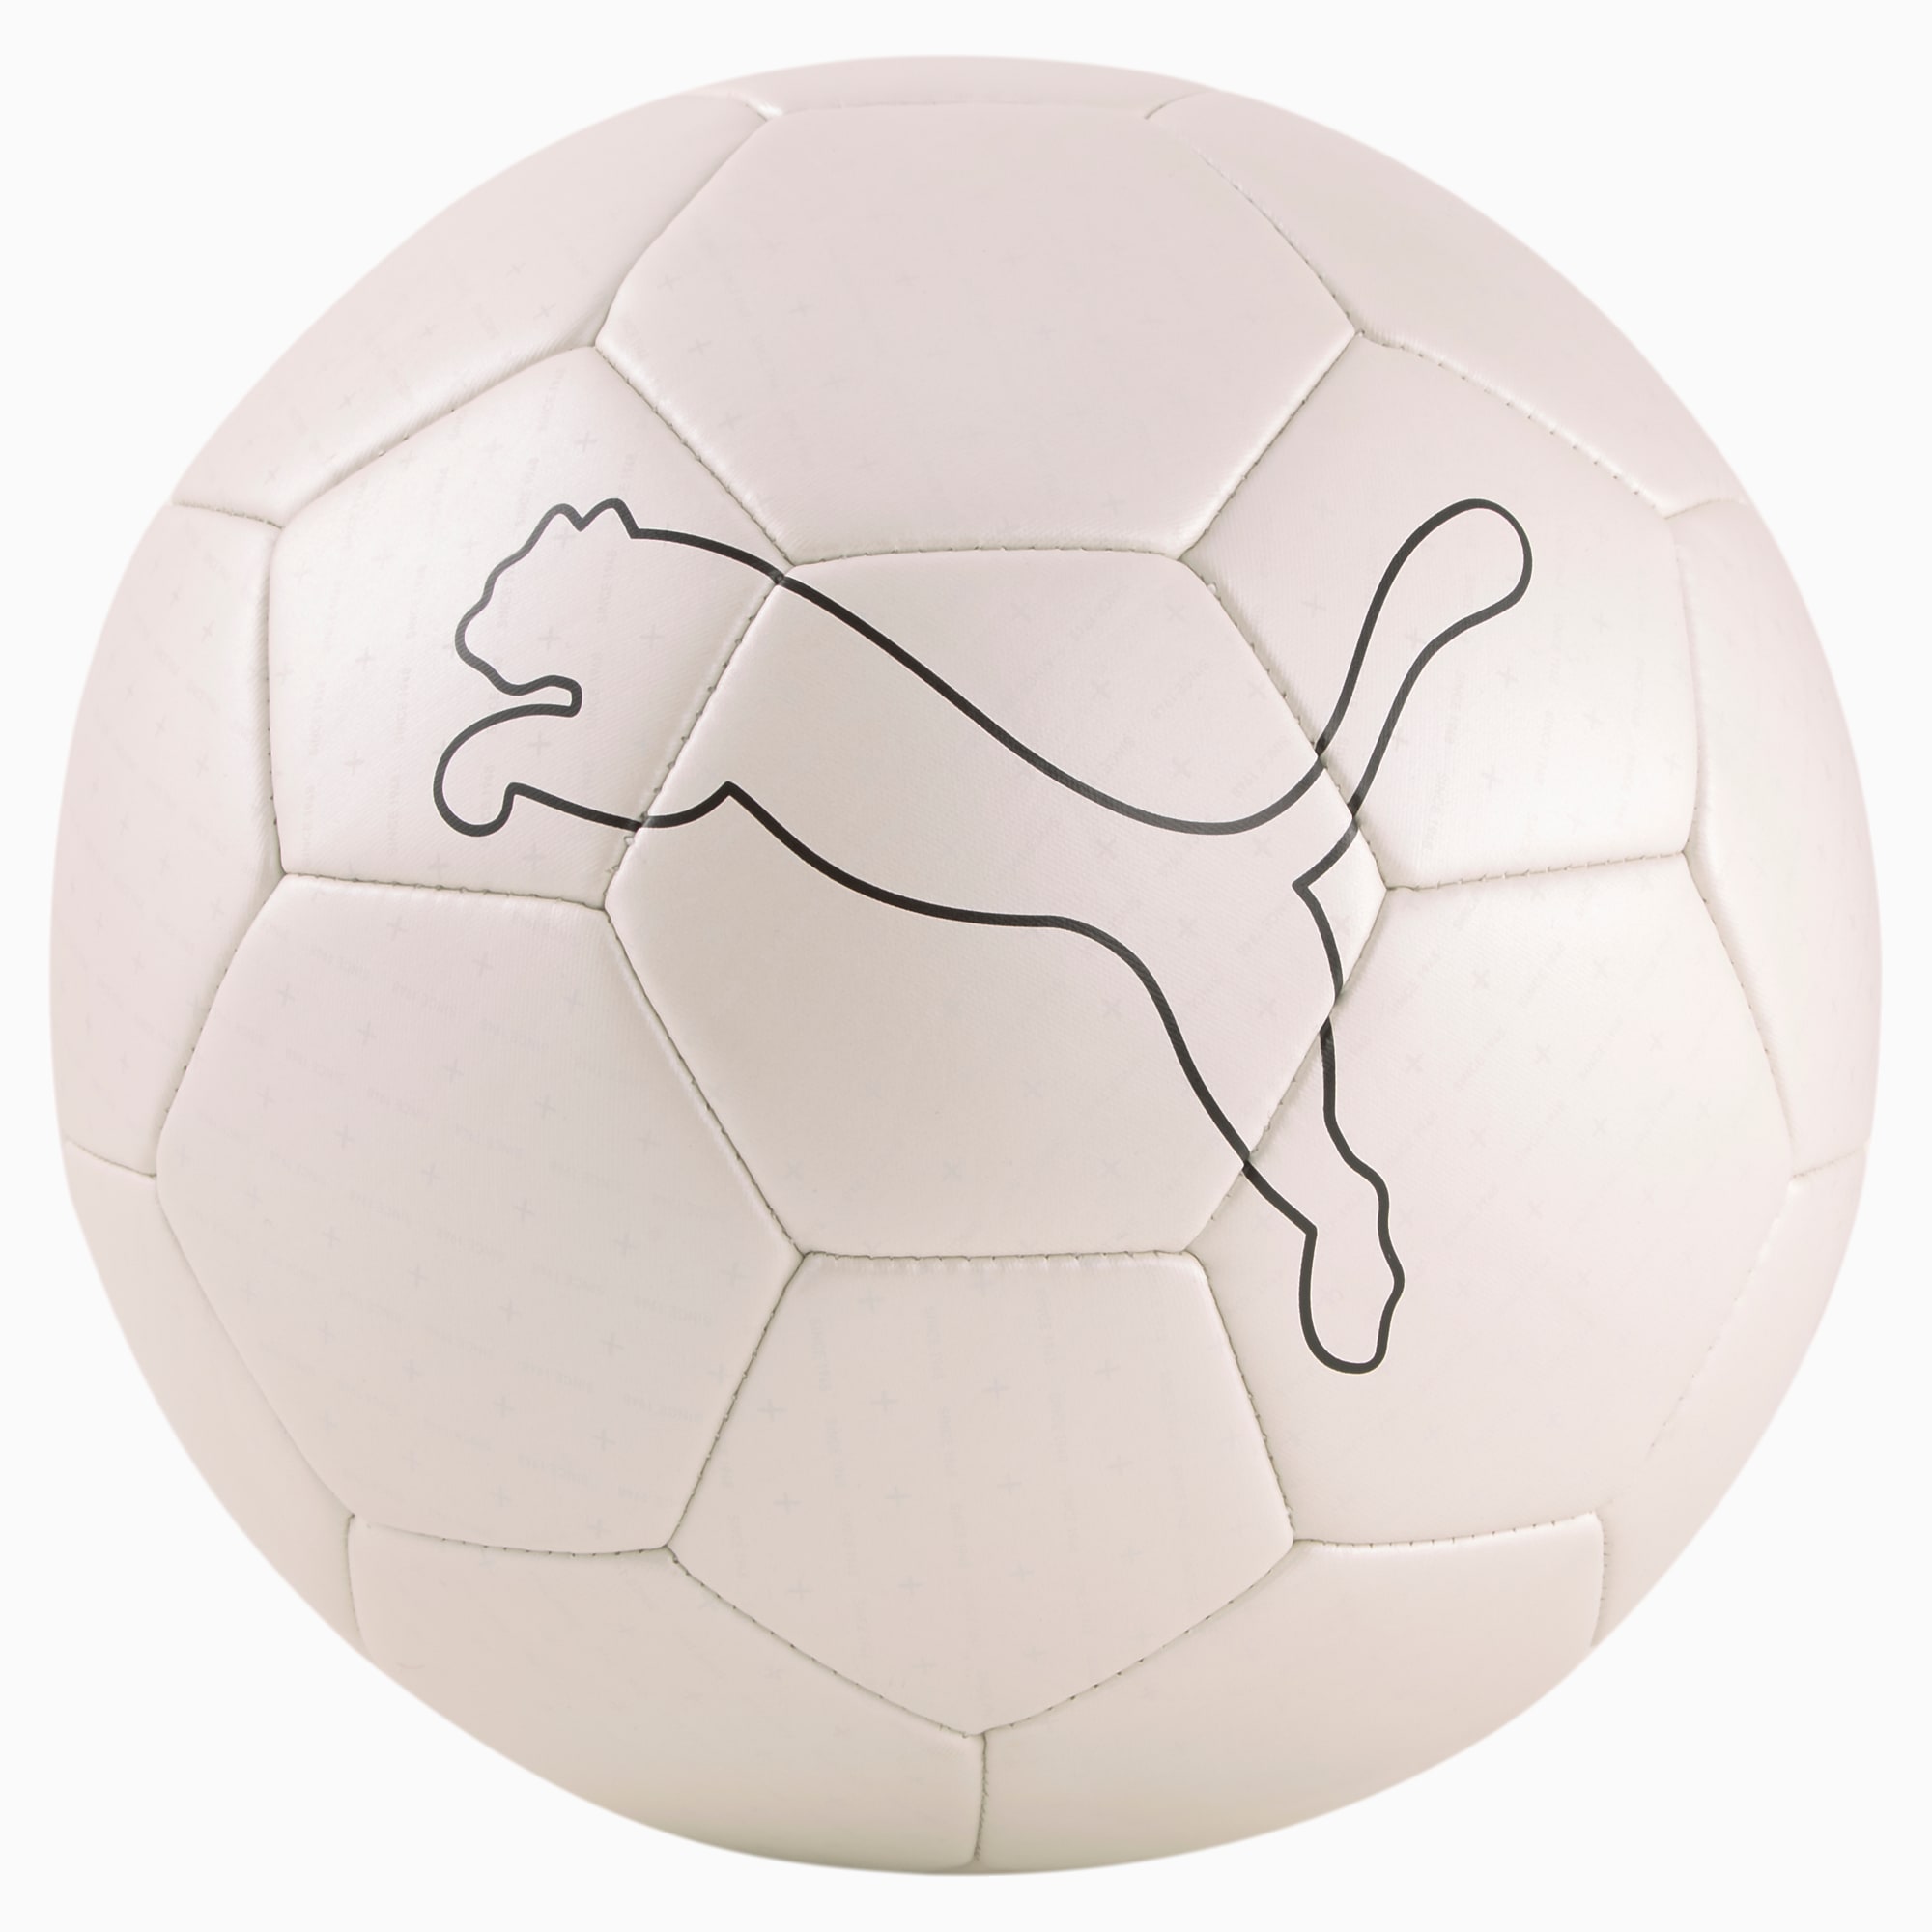 Pallone da calcio FUßBALL King, Bianco/Nero, Taglia 5 | PUMA